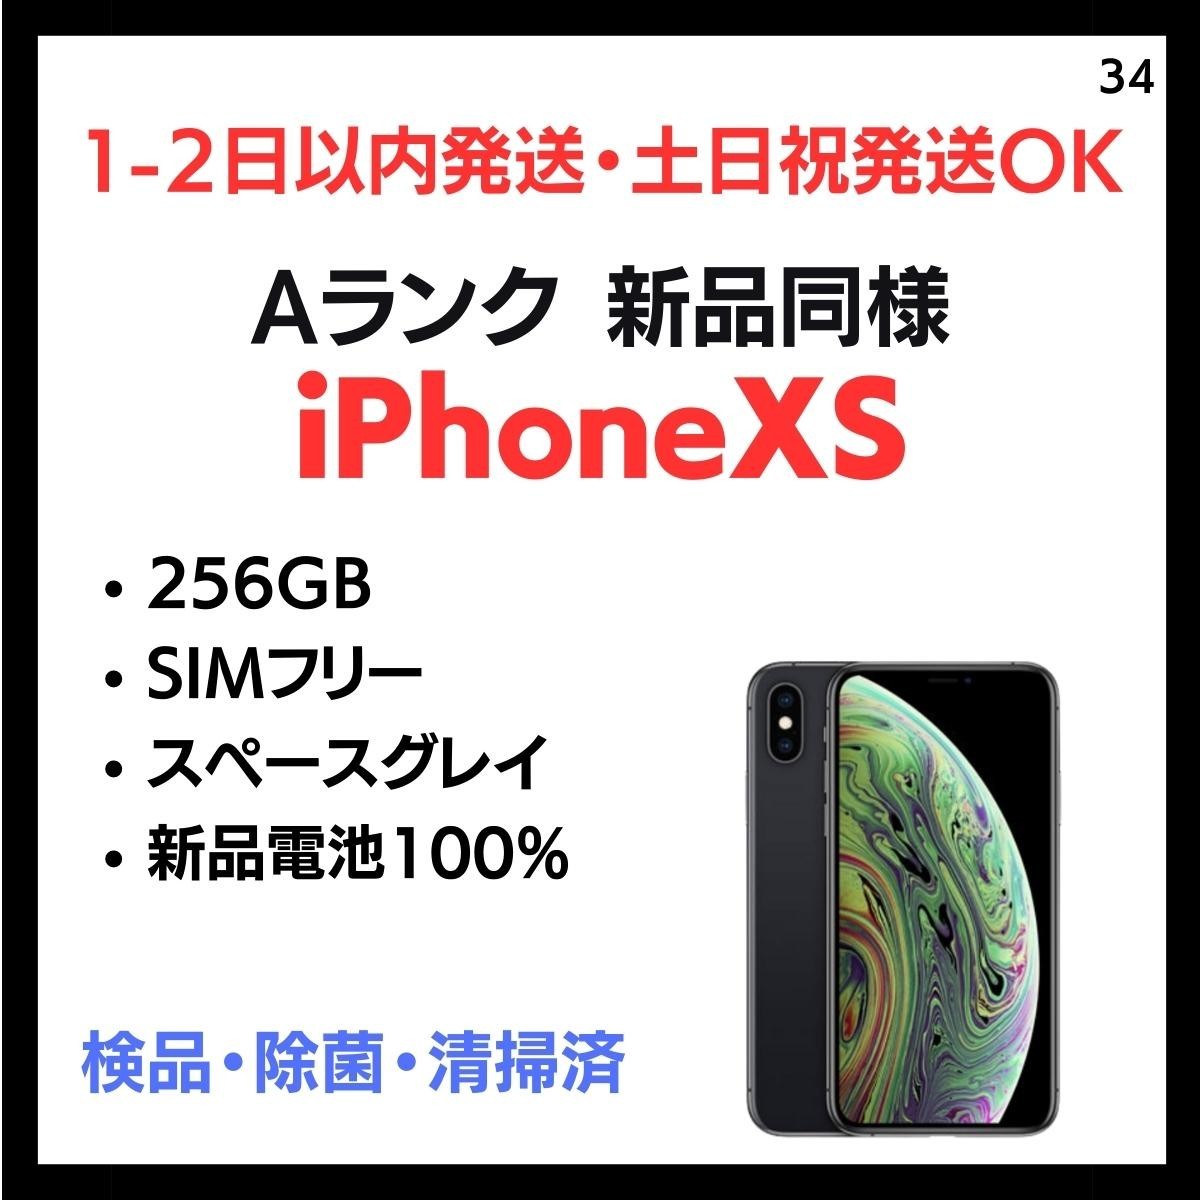 お買い得モデル #34 新品同様 安心保証 送料無料 iPhone XS SIMフリー 256GB スペースグレイ 端末 白ロム 本体 iPhone